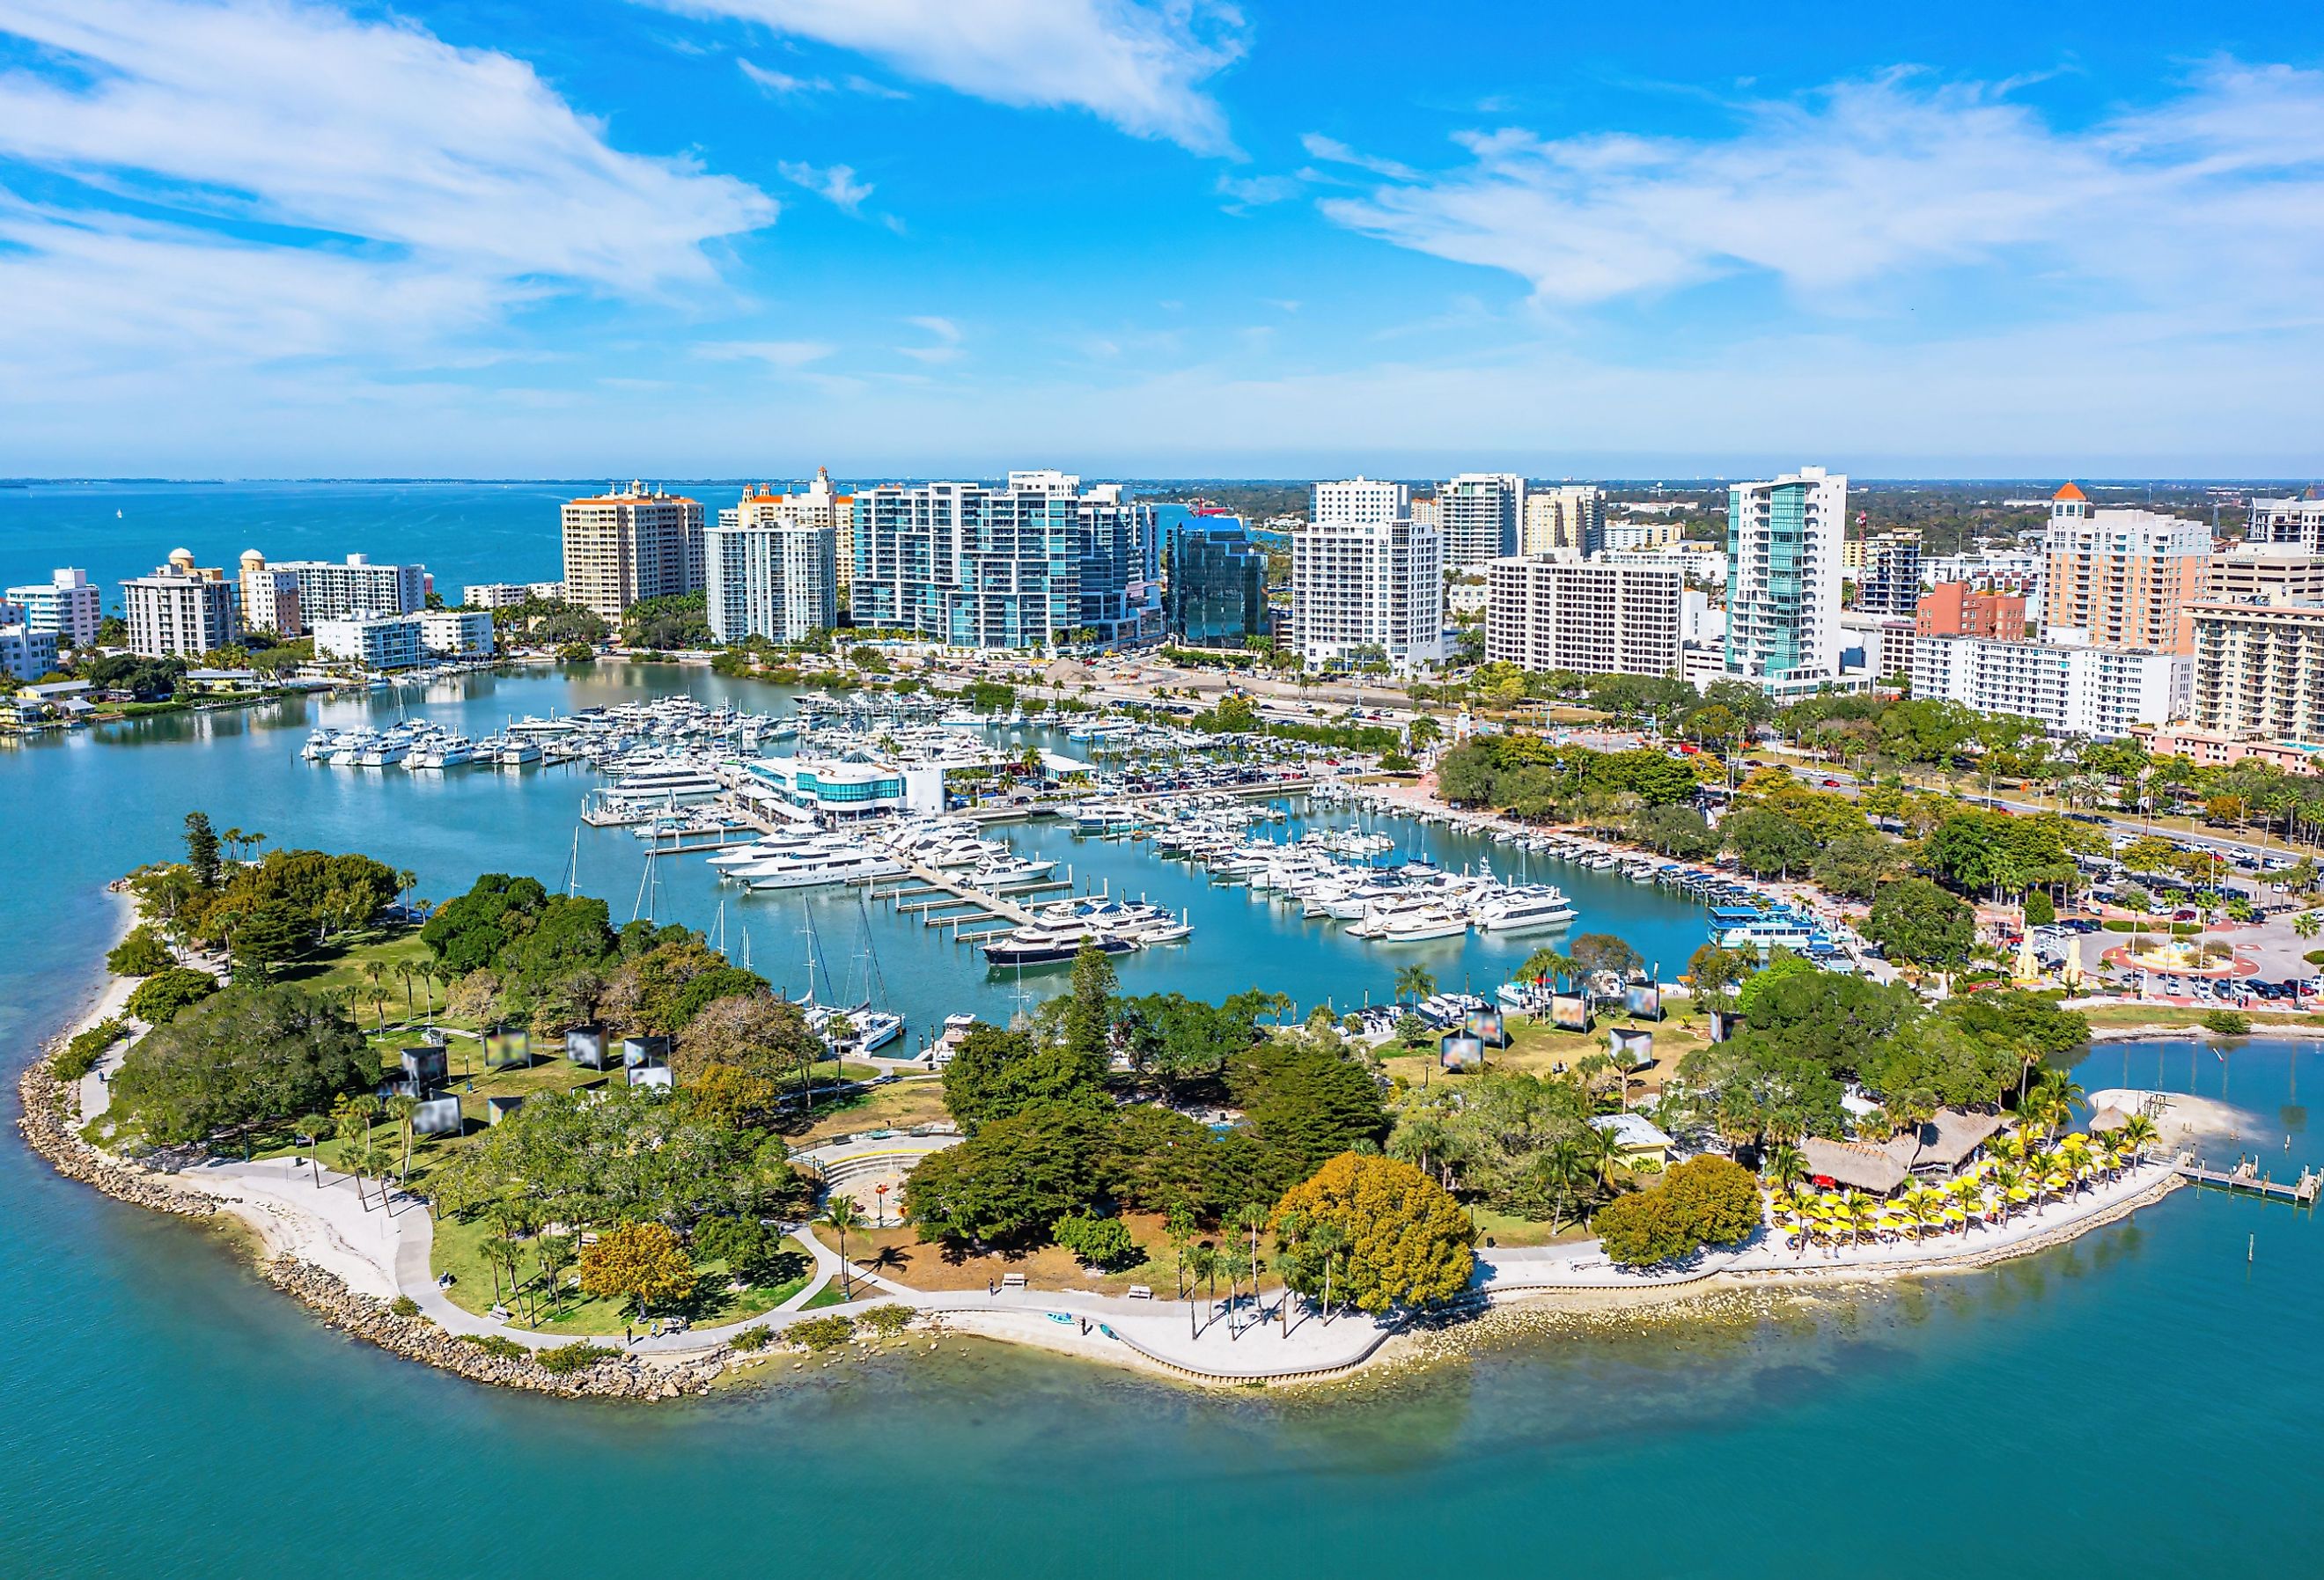 Aerial view of Sarasota, Florida, downtown Bayfront Park Marina.